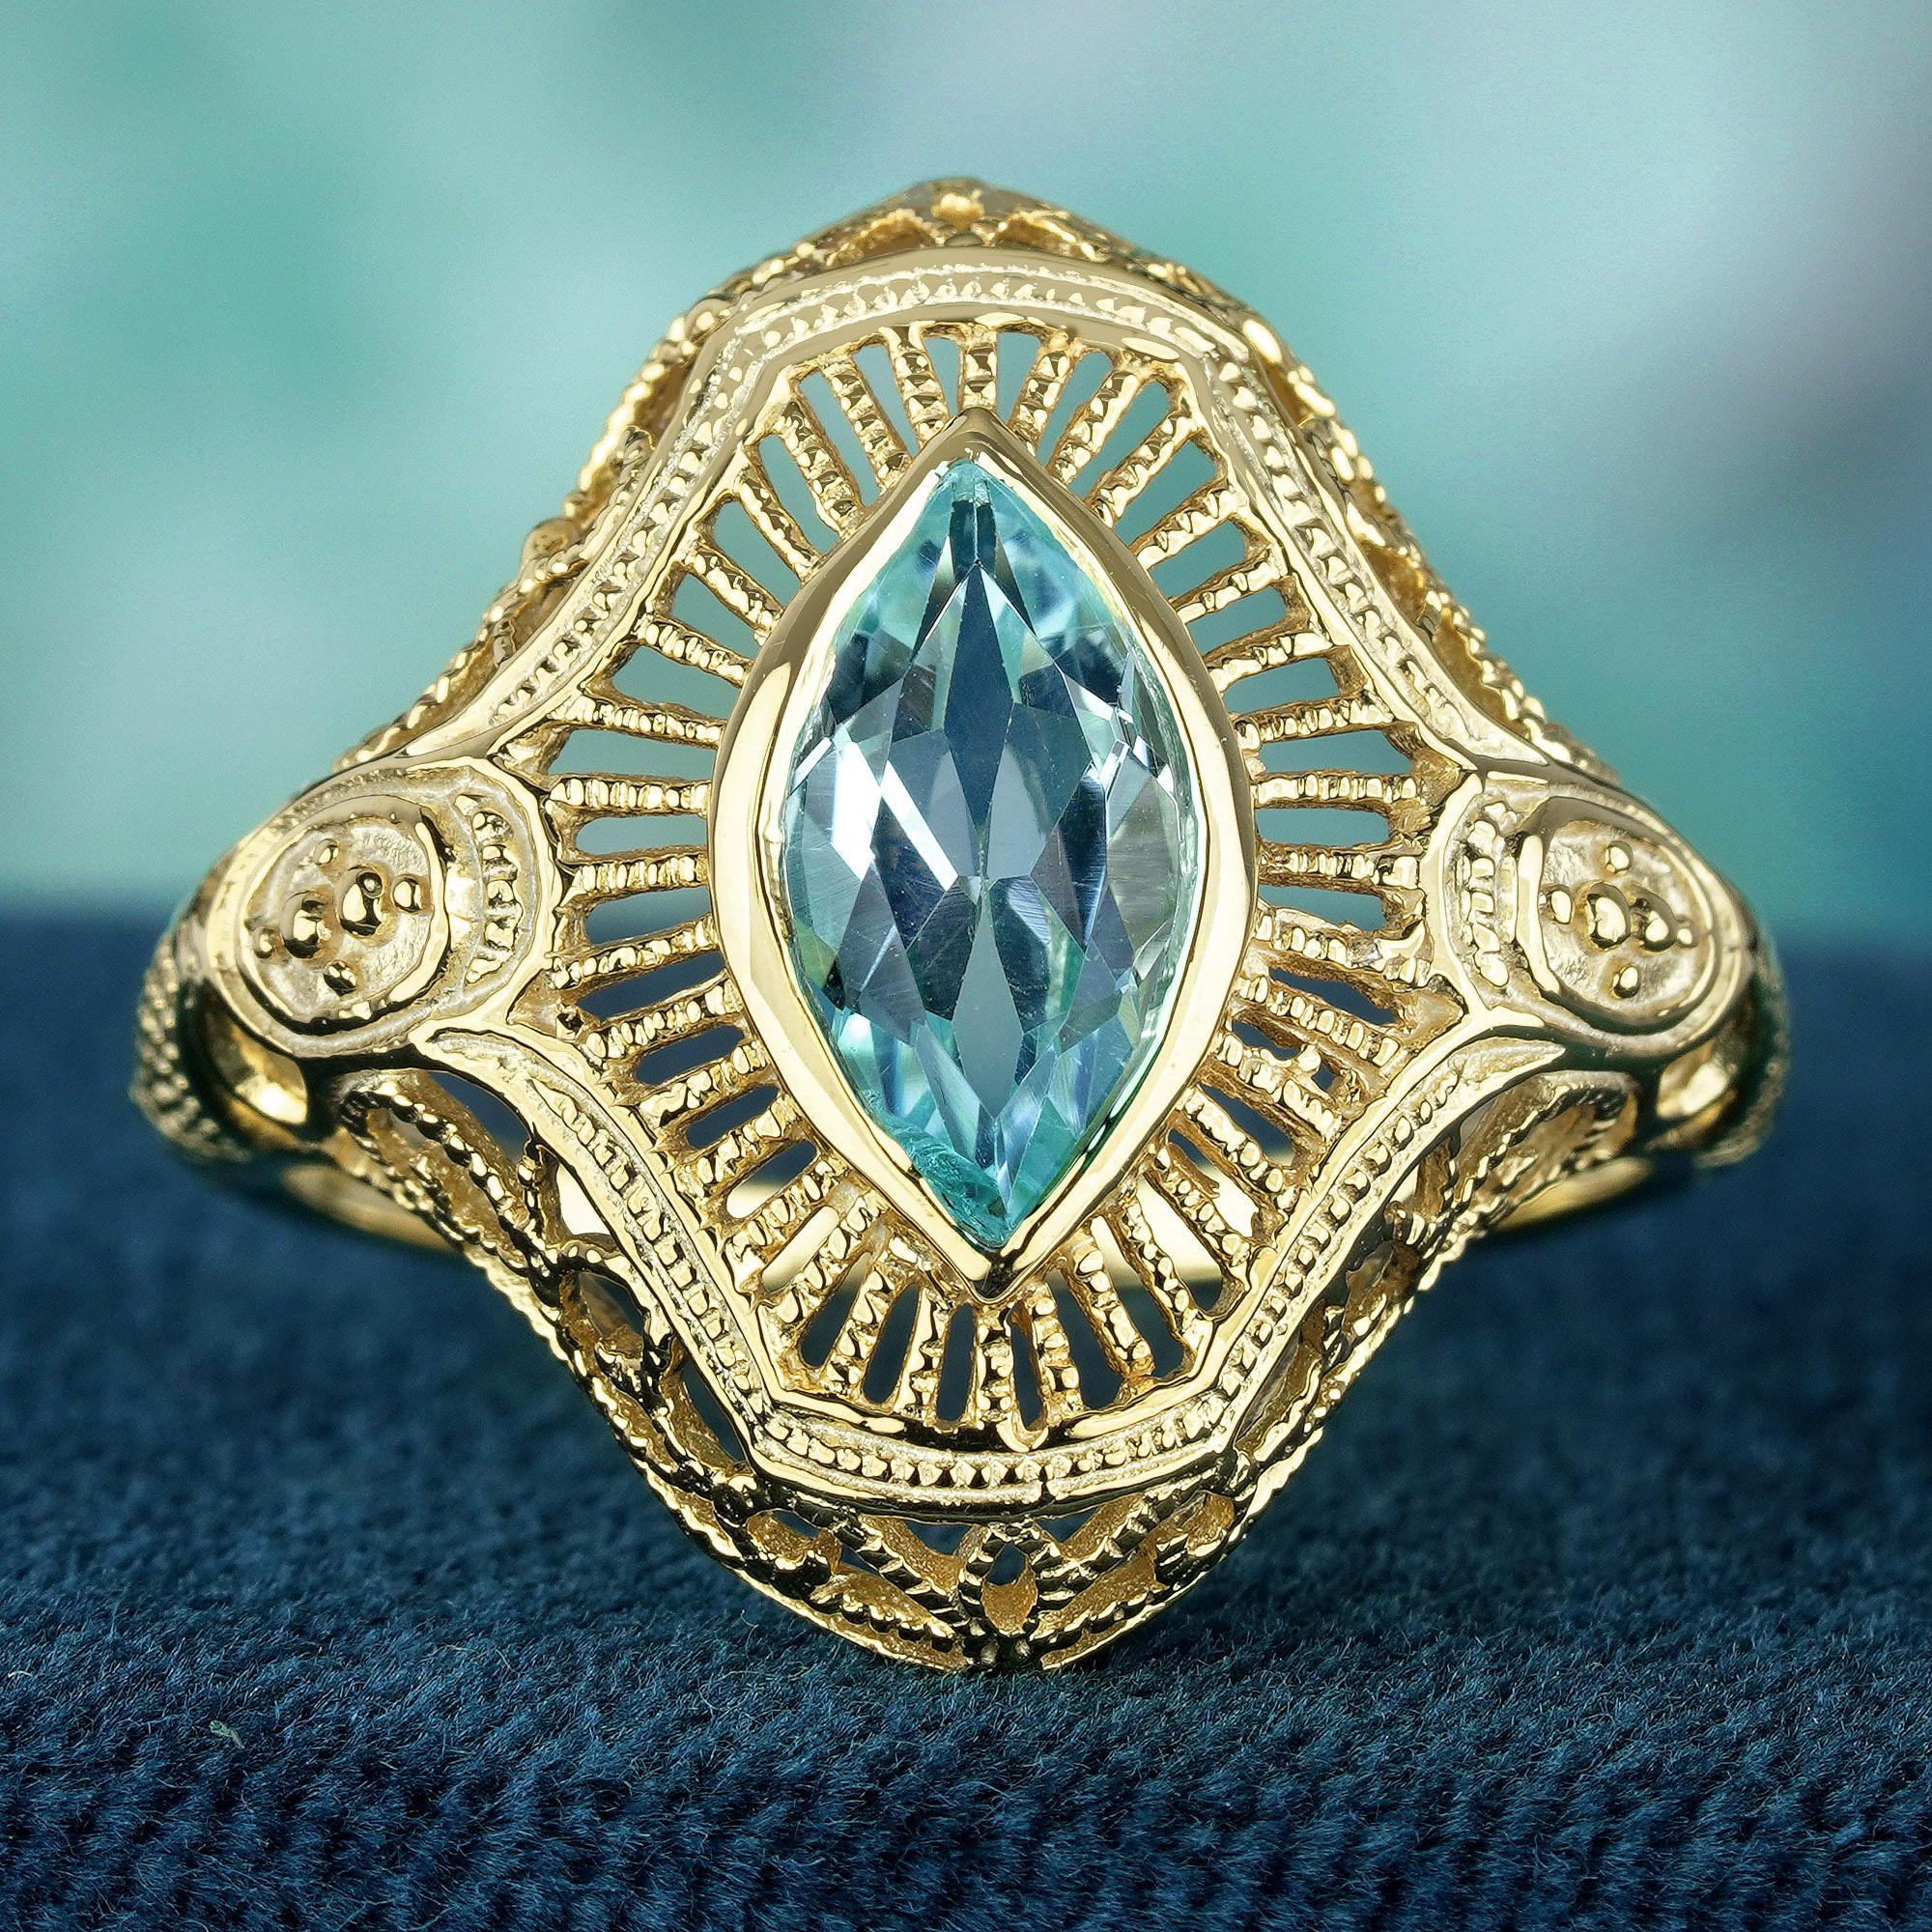 Gönnen Sie sich zeitlose Eleganz mit unserem Marquise-Blautopas-Ring im Art-Déco-Stil. Das exquisite, filigrane Design aus Gelbgold strahlt Raffinesse und Charme aus. Erhöhen Sie Ihren Stil mit diesem atemberaubenden Stück, das zu jedem Anlass einen